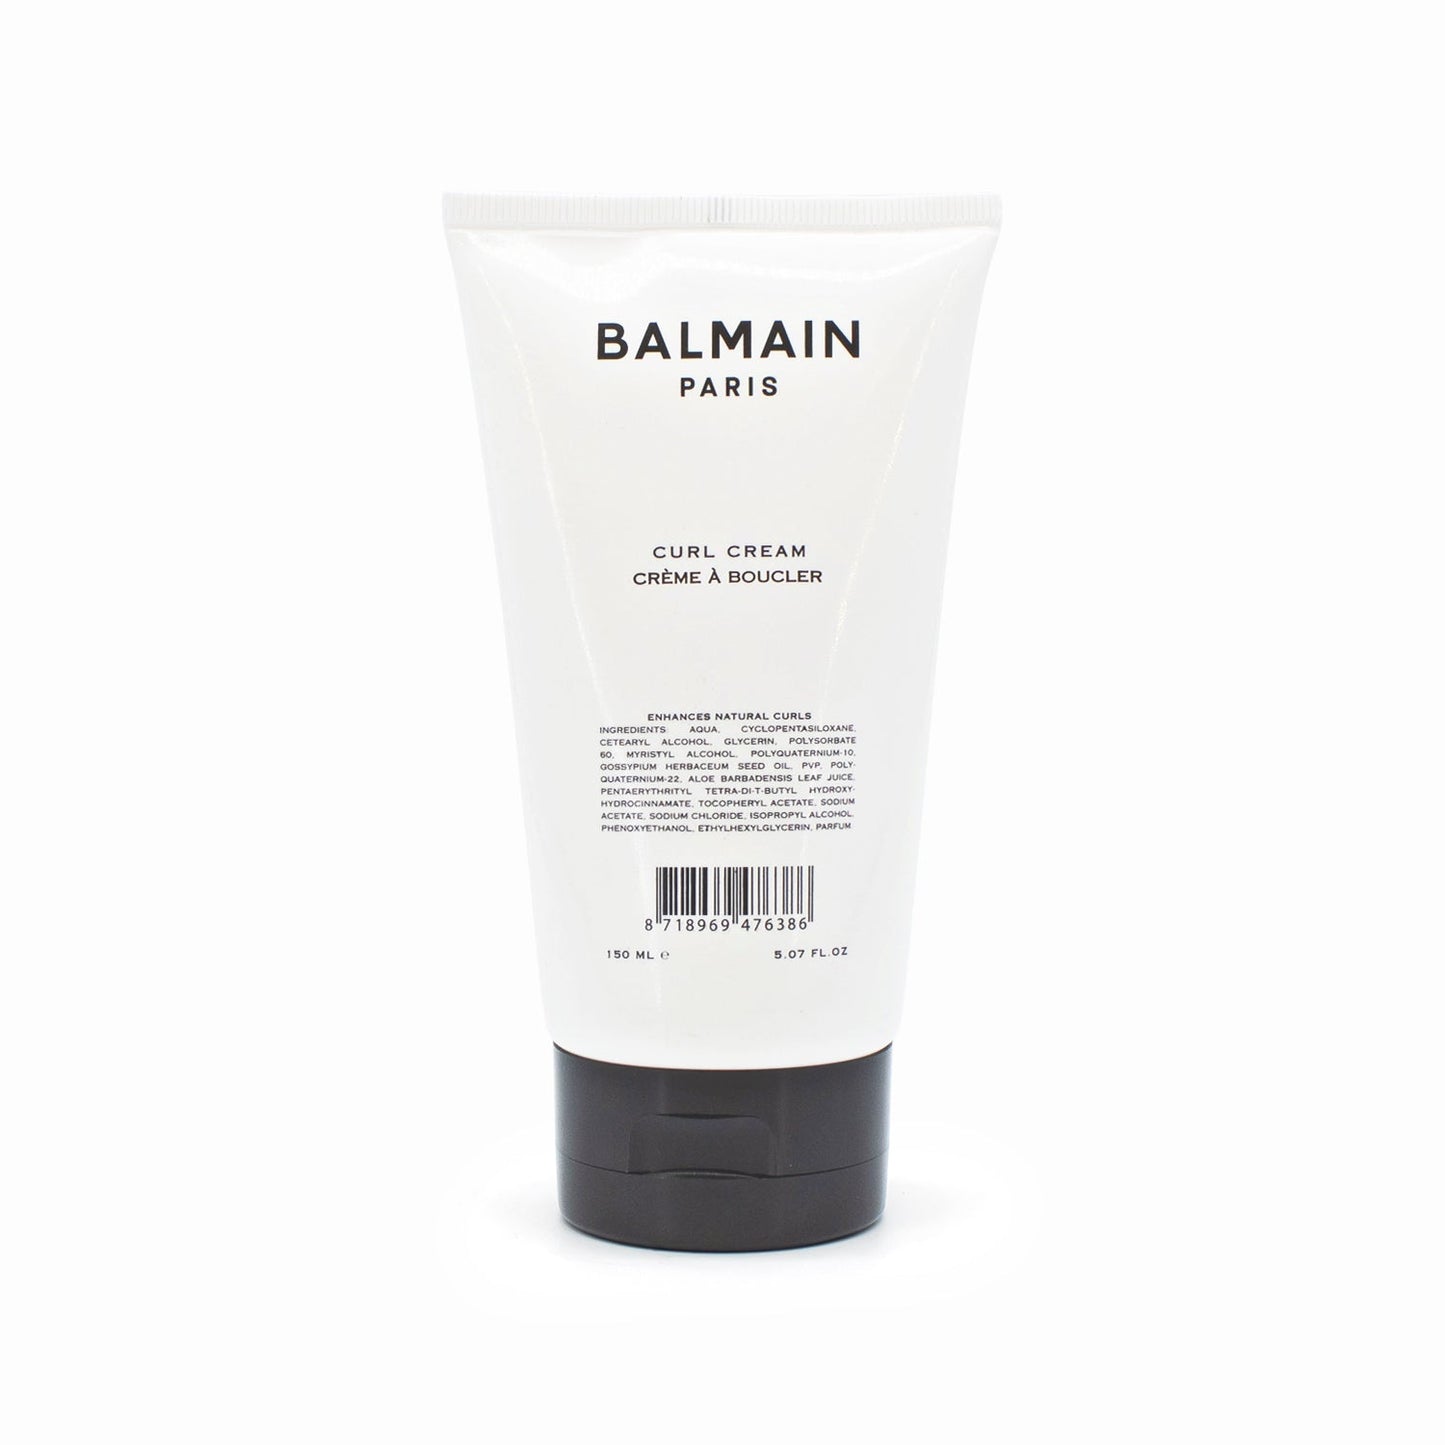 BALMAIN Paris Curl Cream 5.07oz - Small Amount Missing